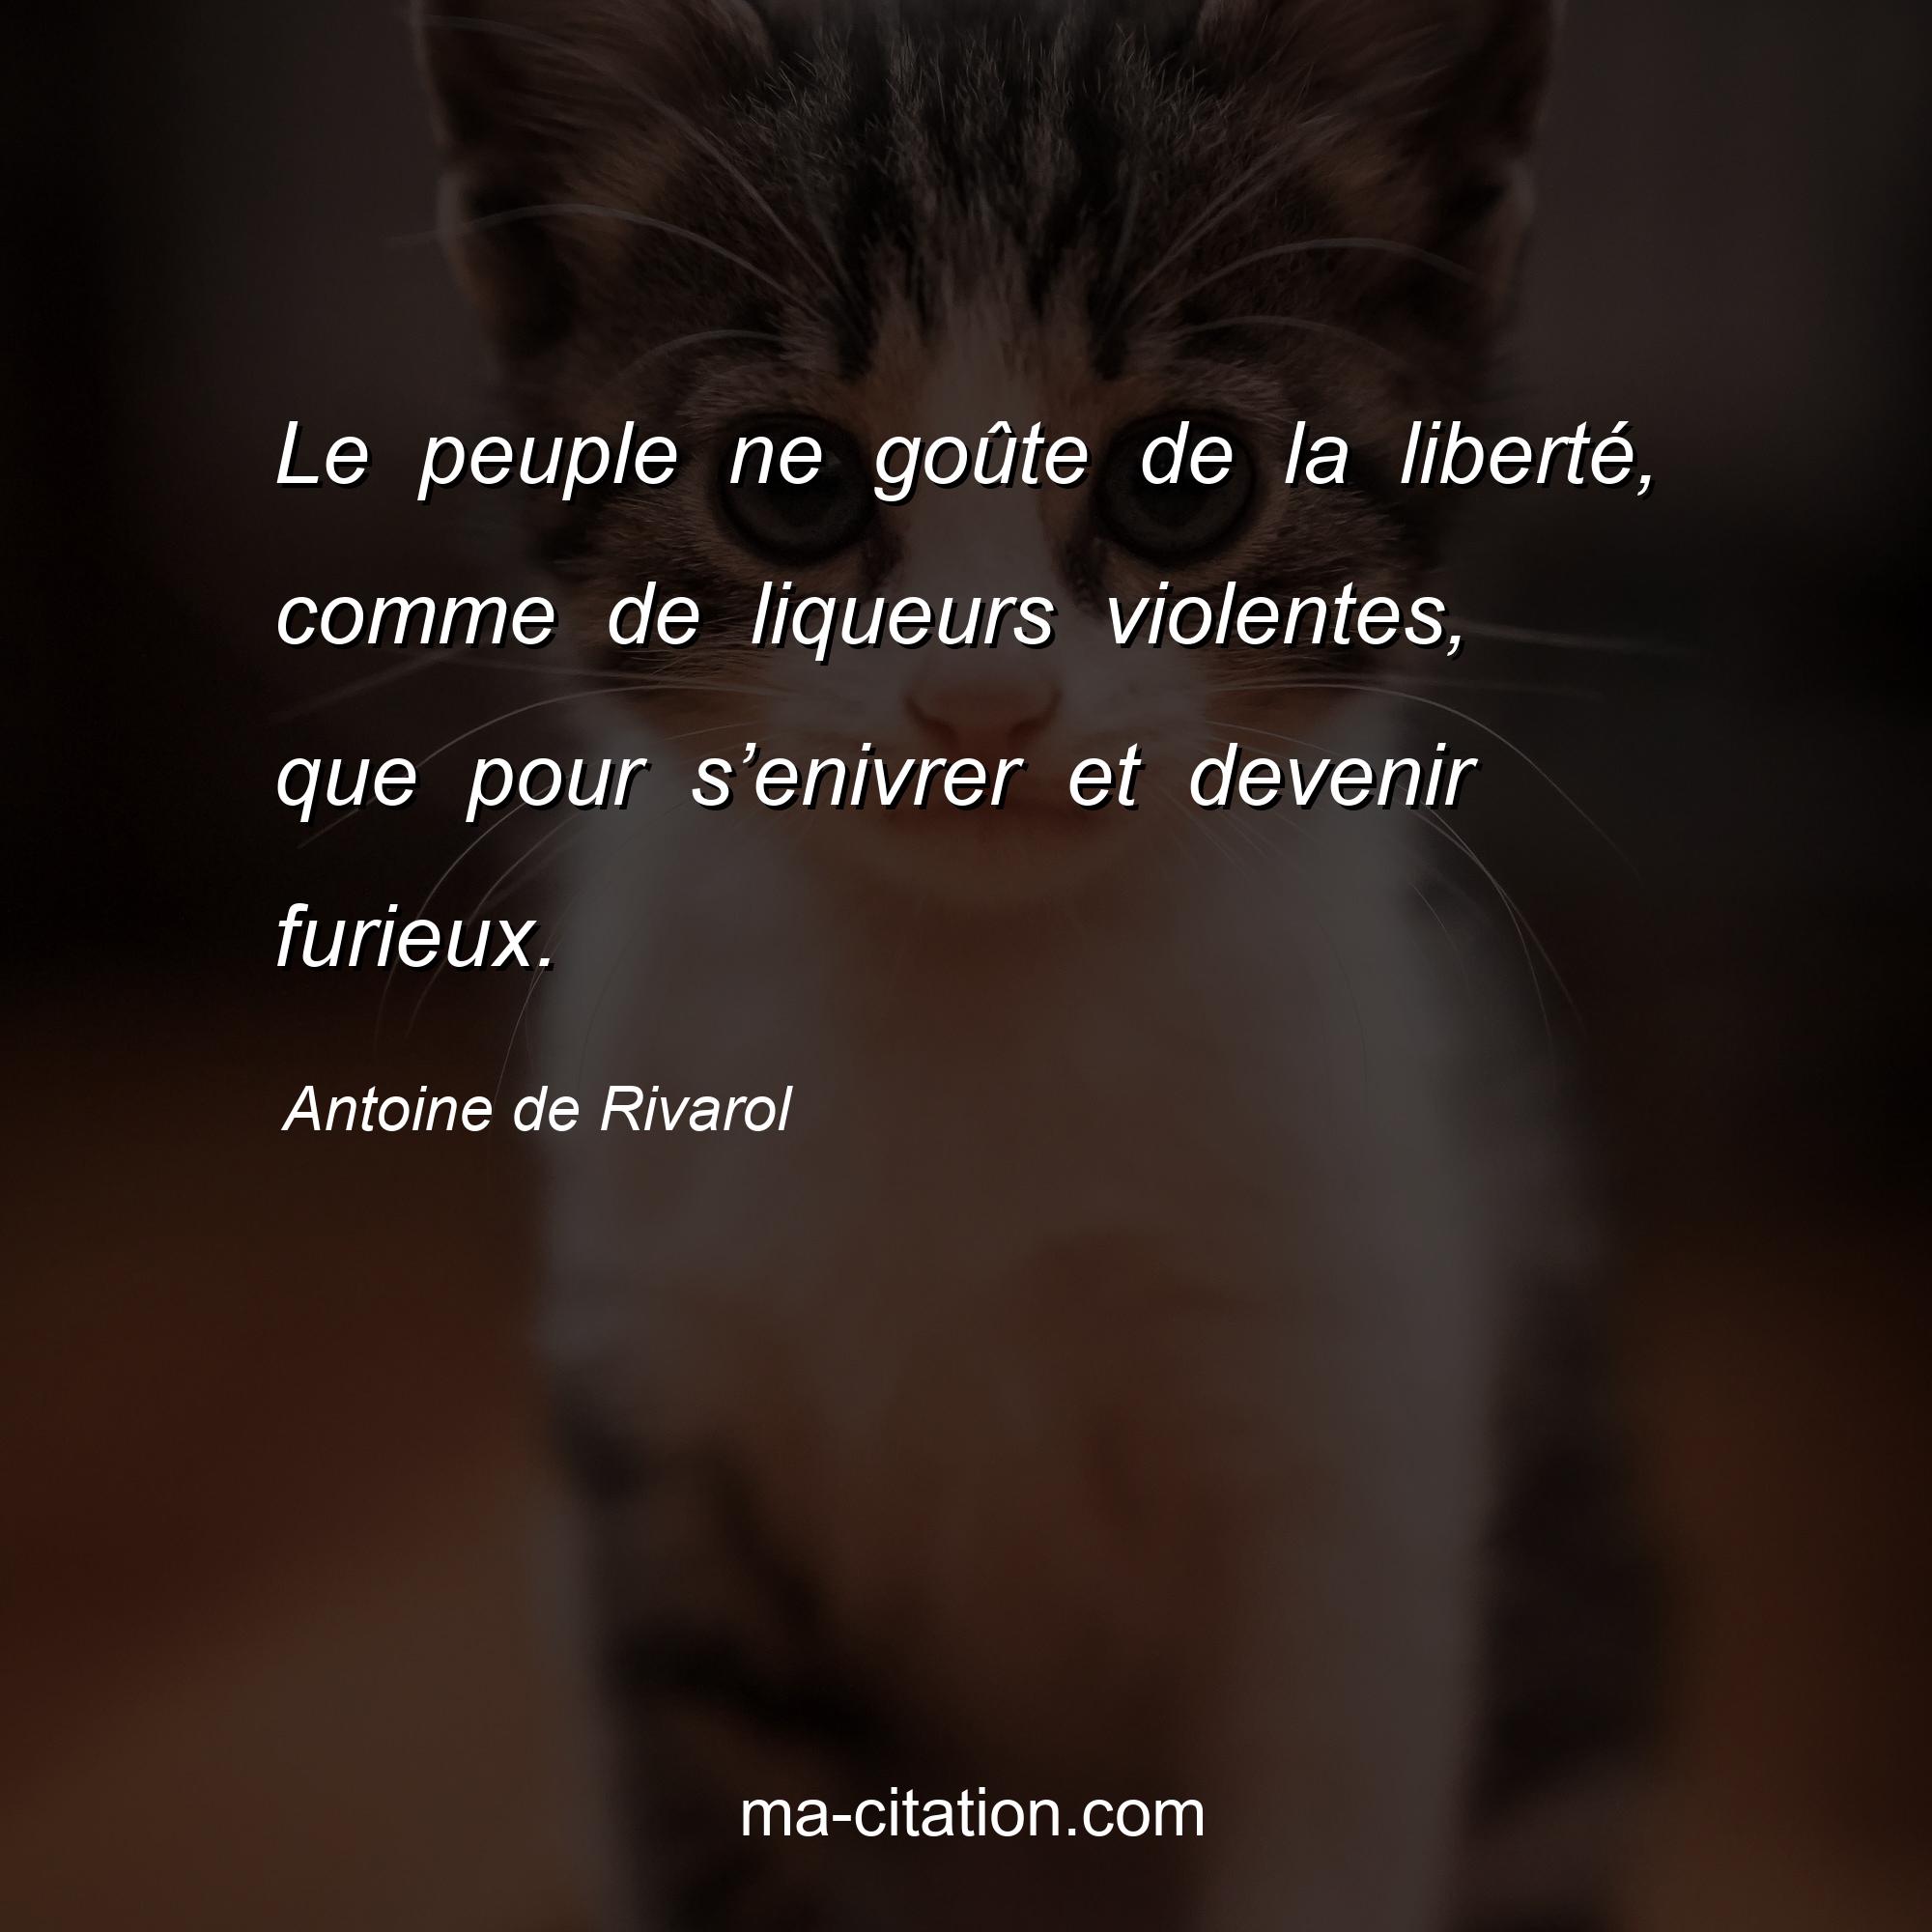 Antoine de Rivarol : Le peuple ne goûte de la liberté, comme de liqueurs violentes, que pour s’enivrer et devenir furieux.